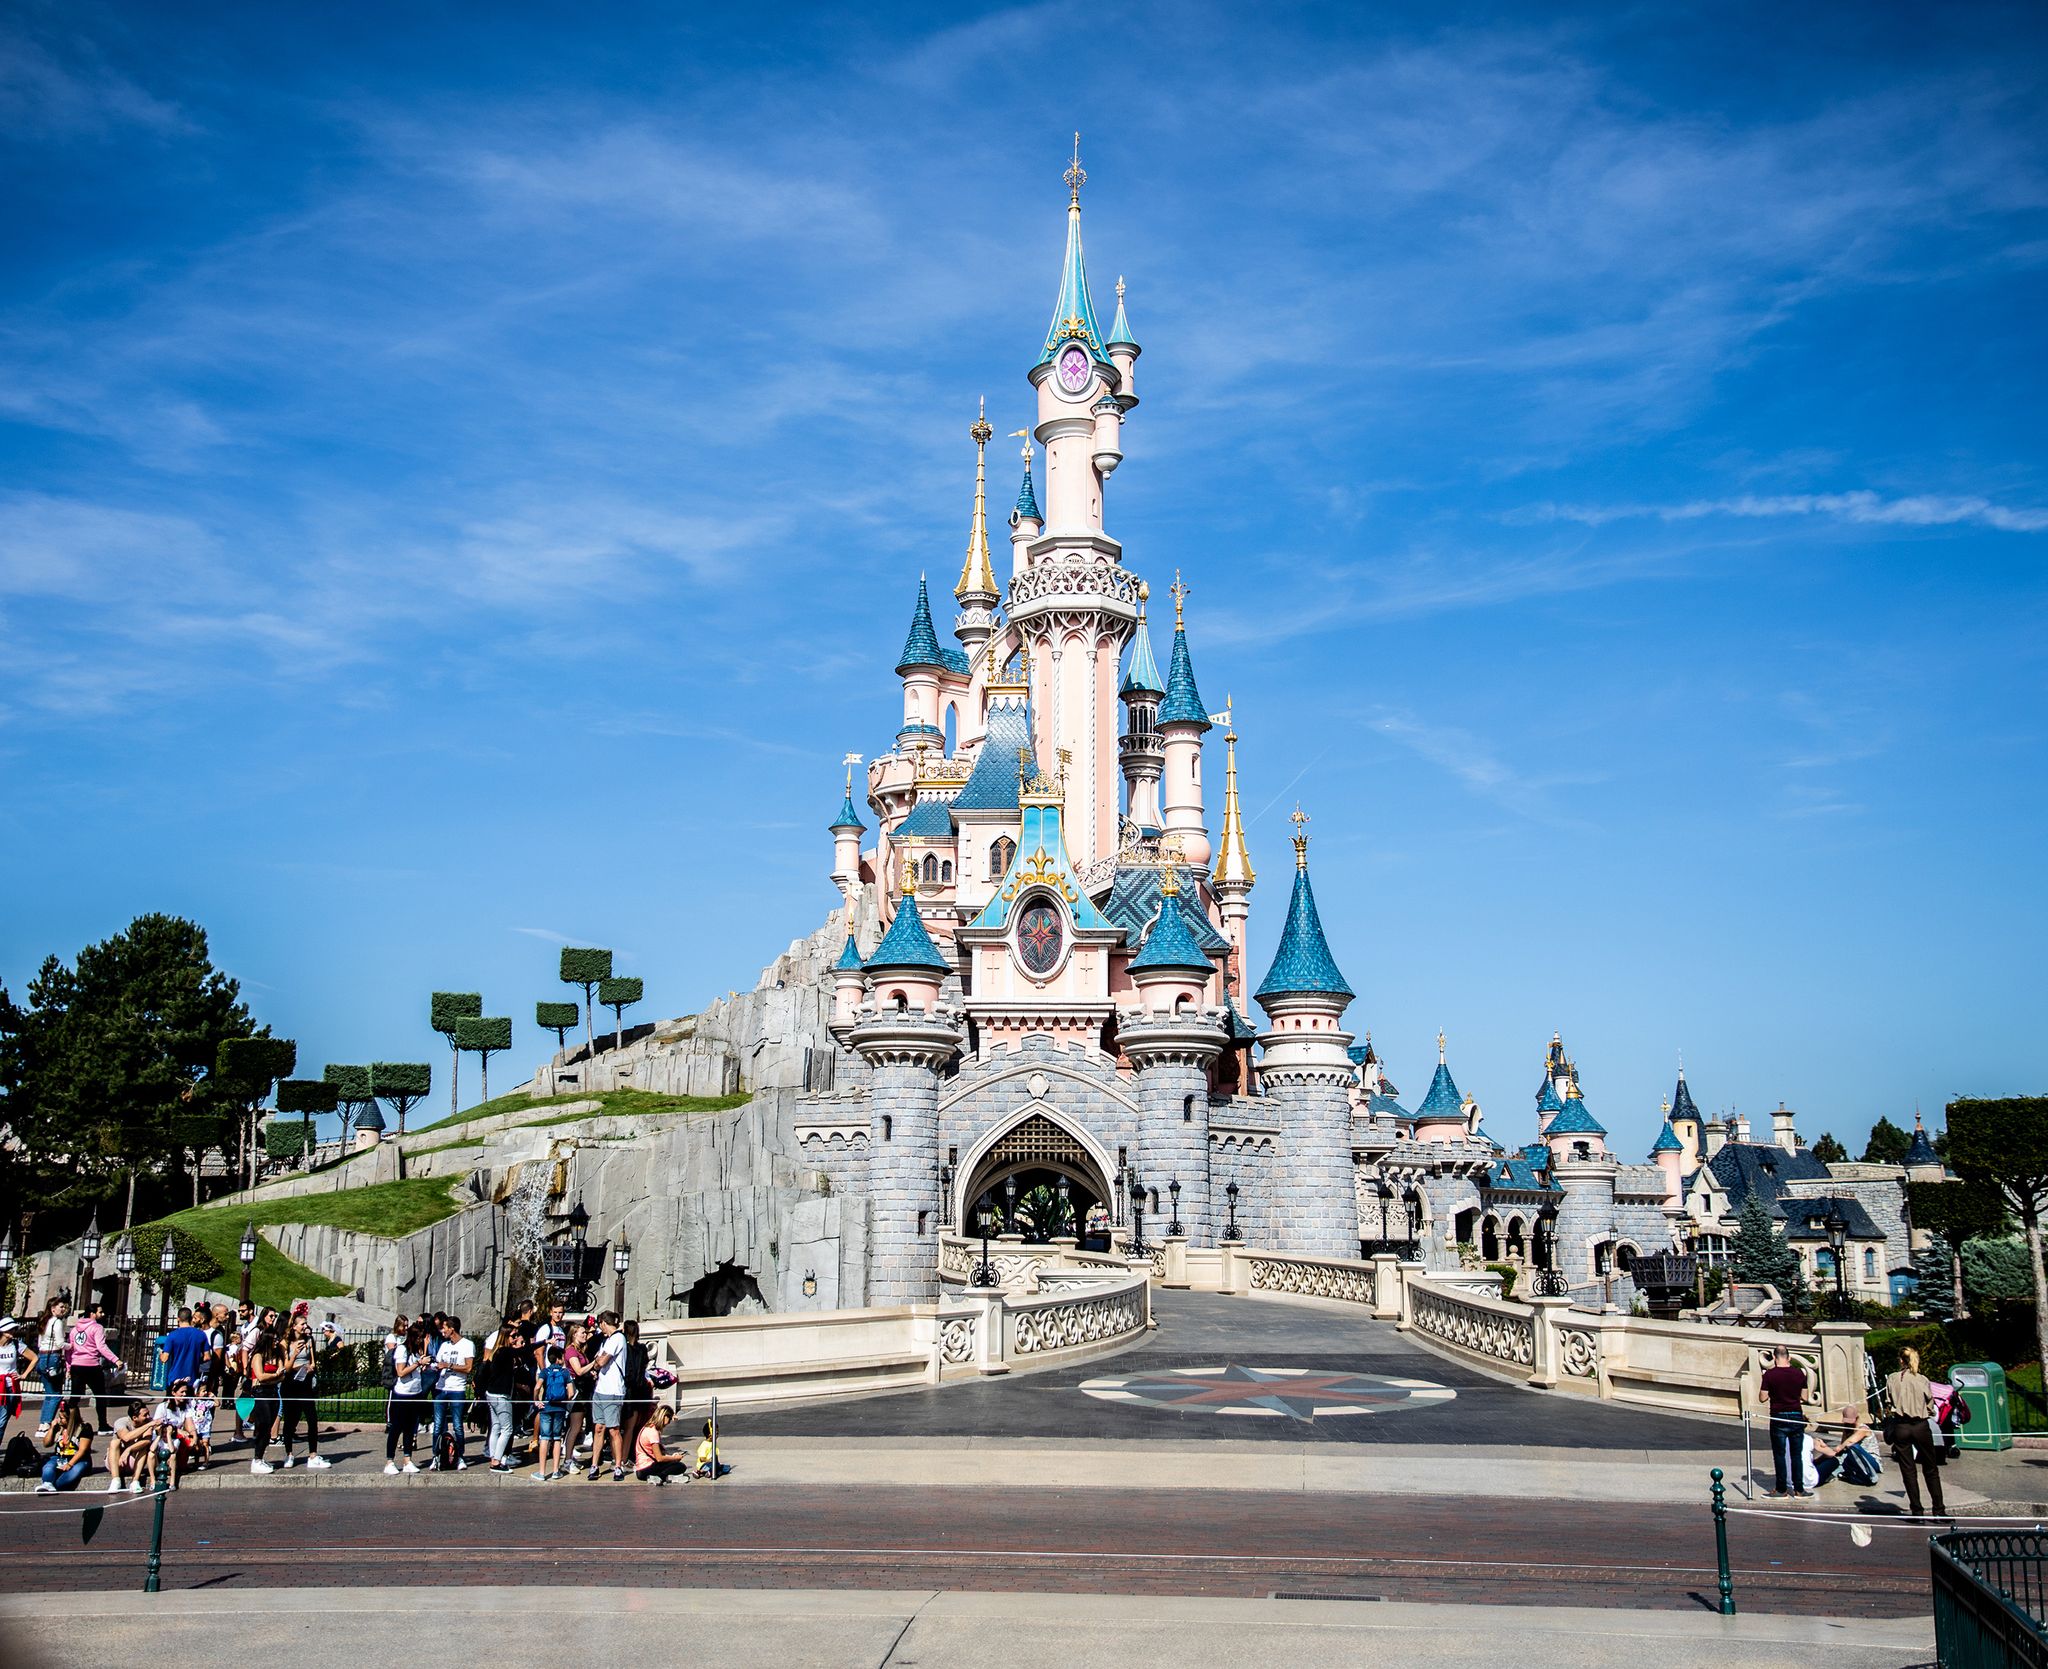 Séjour Disneyland Paris